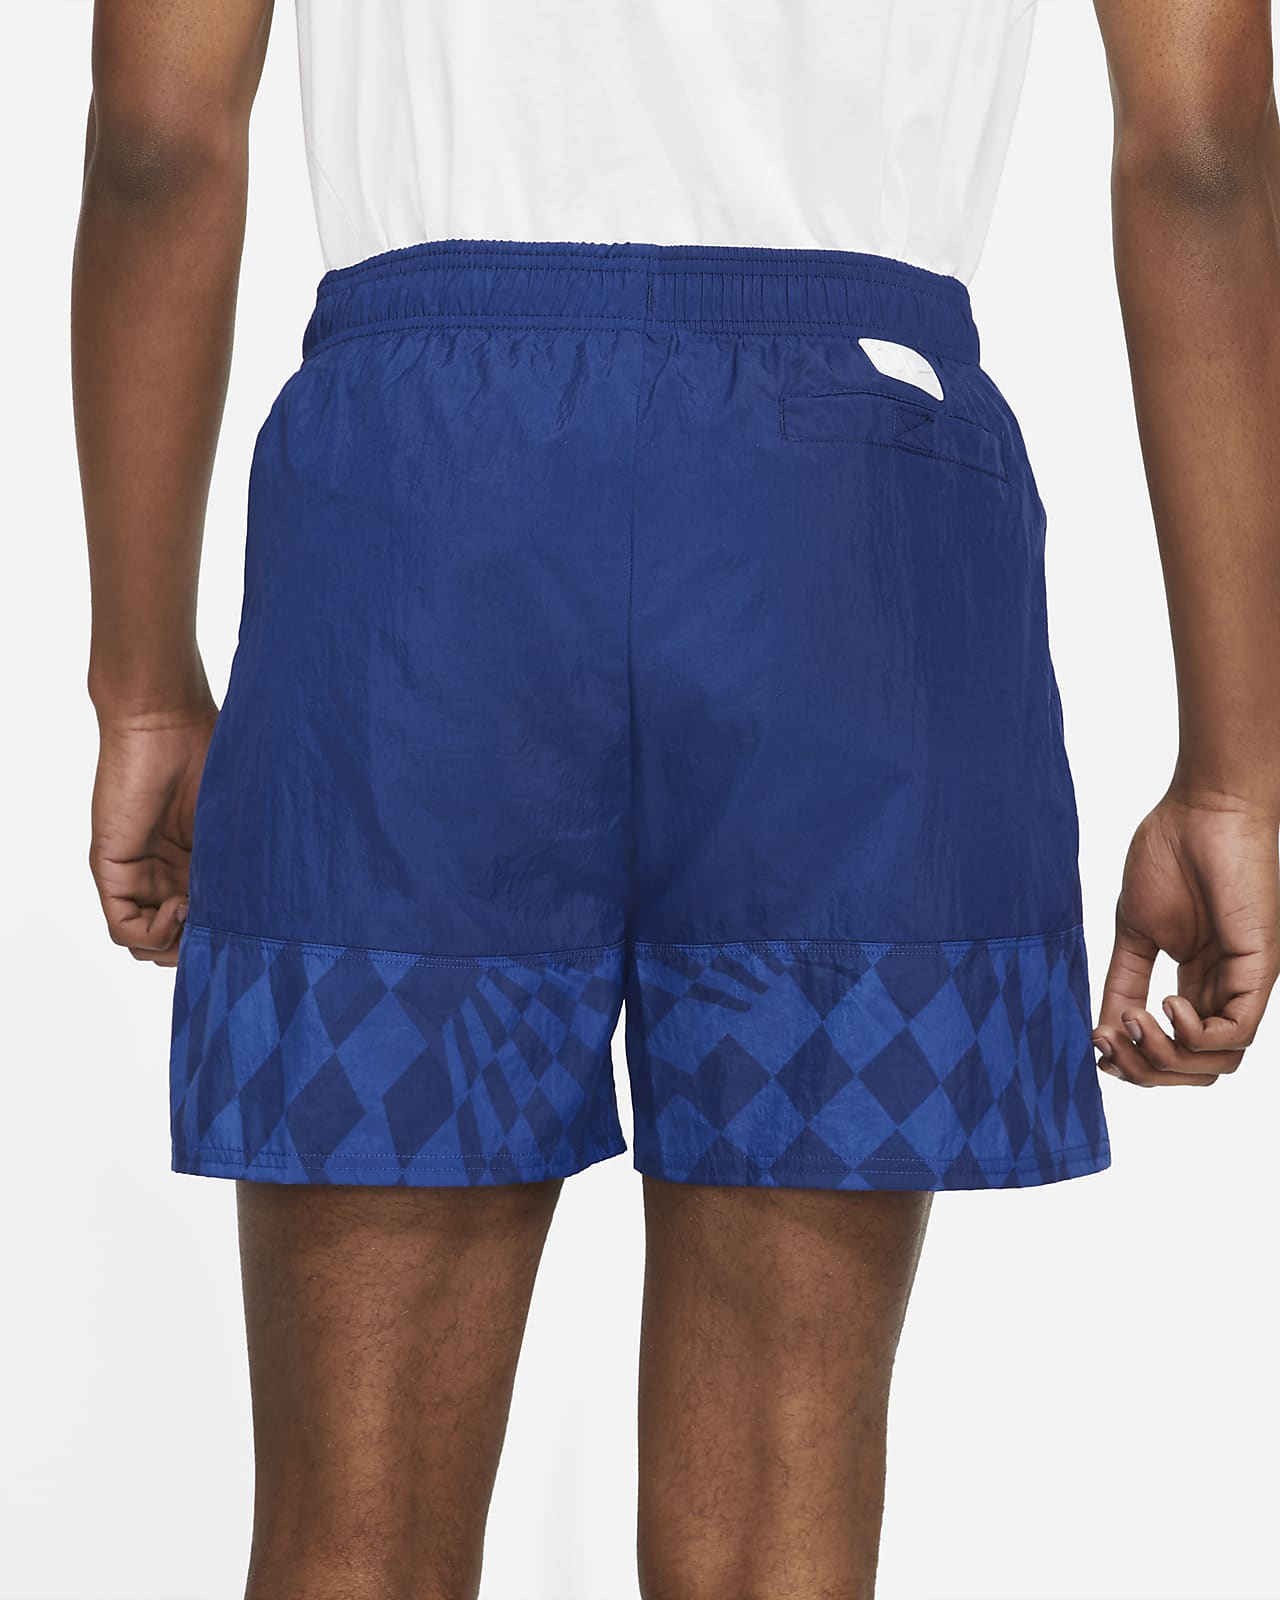 gemiddelde Marco Polo identificatie Chelsea FC Men's Woven Soccer Shorts. Nike.com